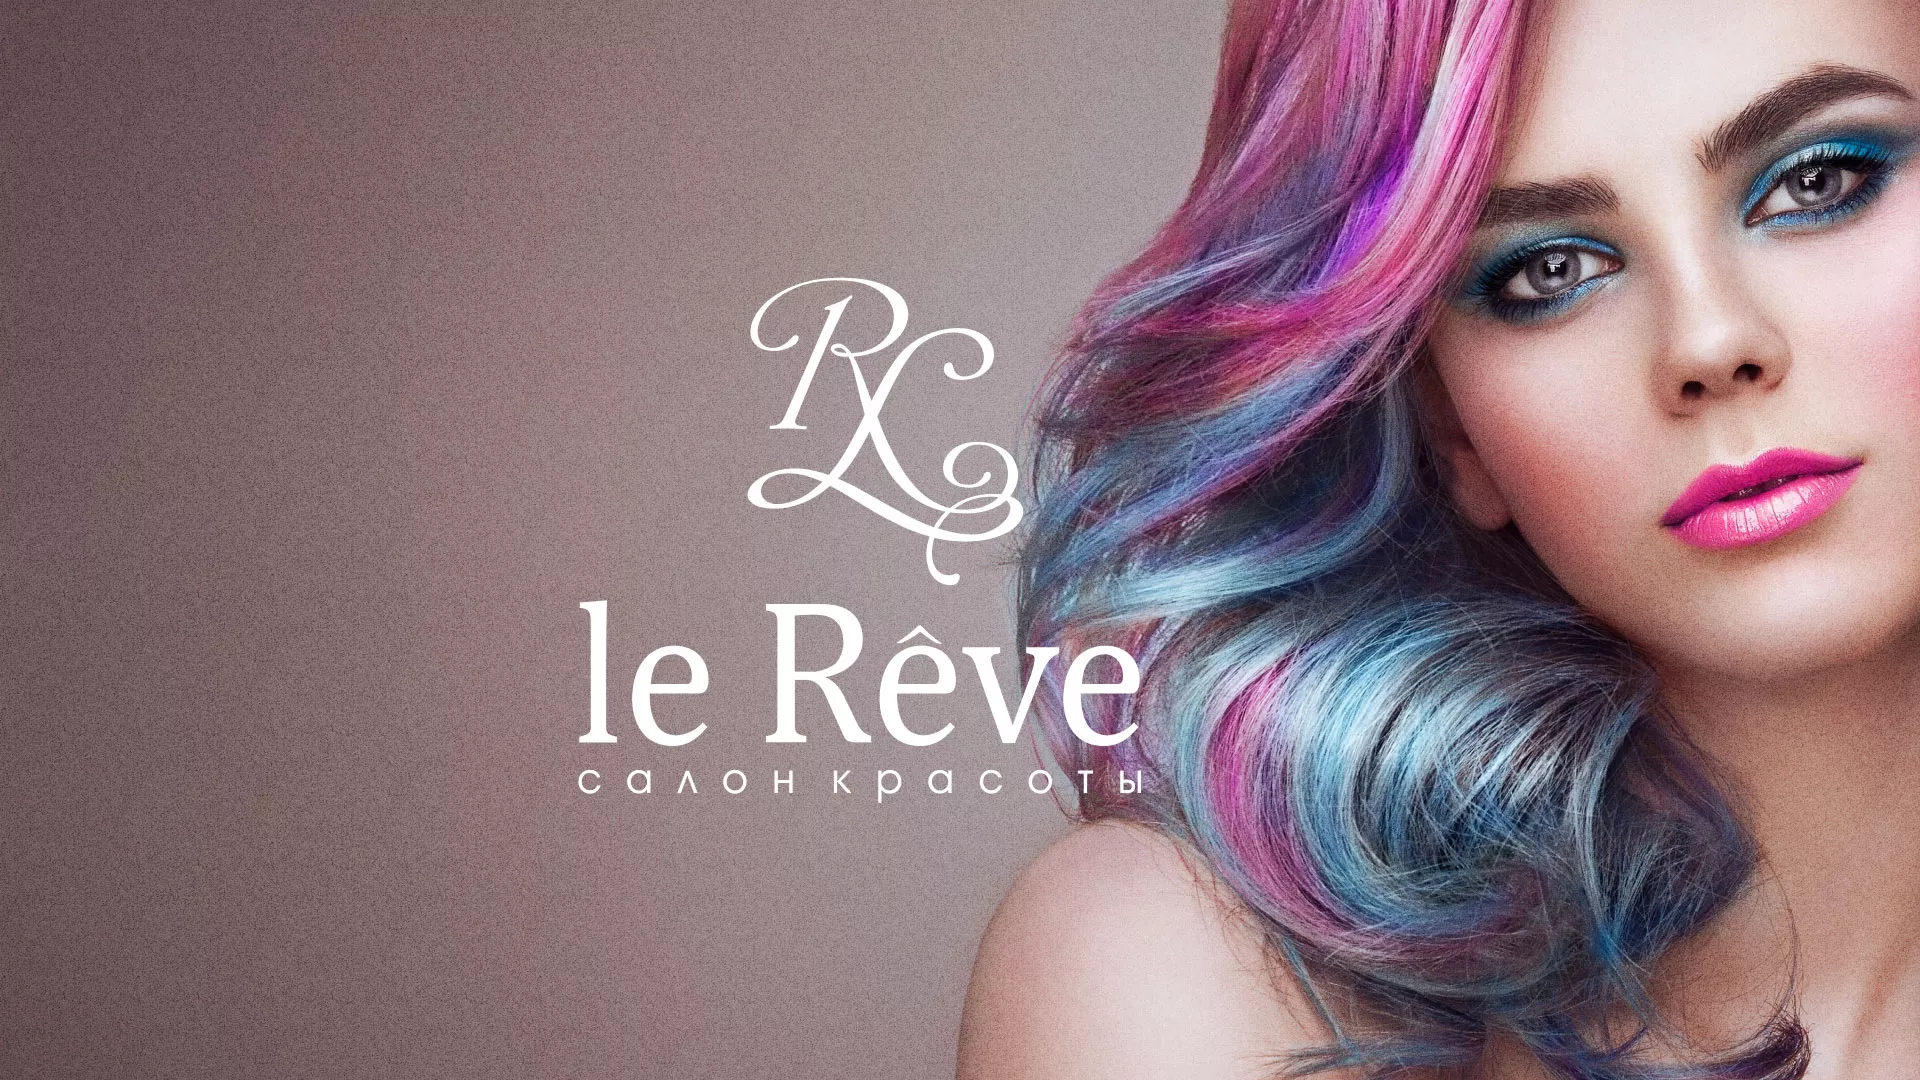 Создание сайта для салона красоты «Le Reve» в Райчихинске